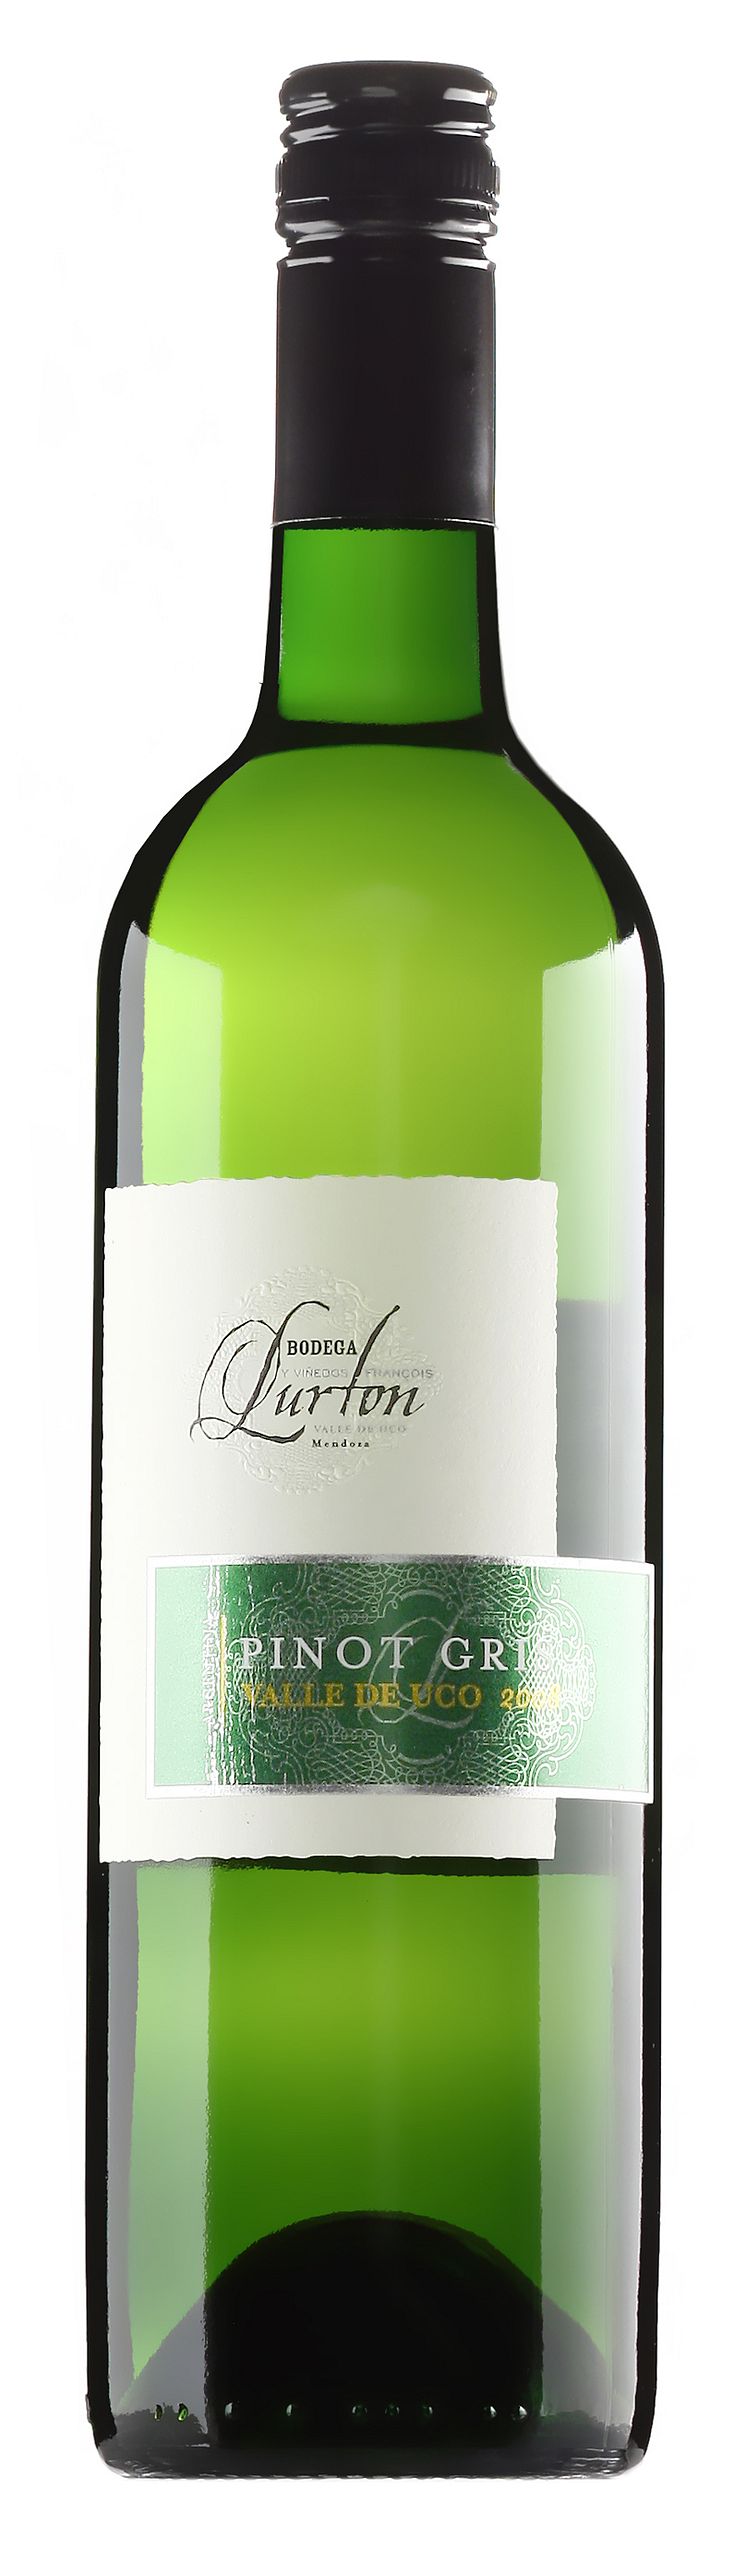 Lurton Pinot Gris